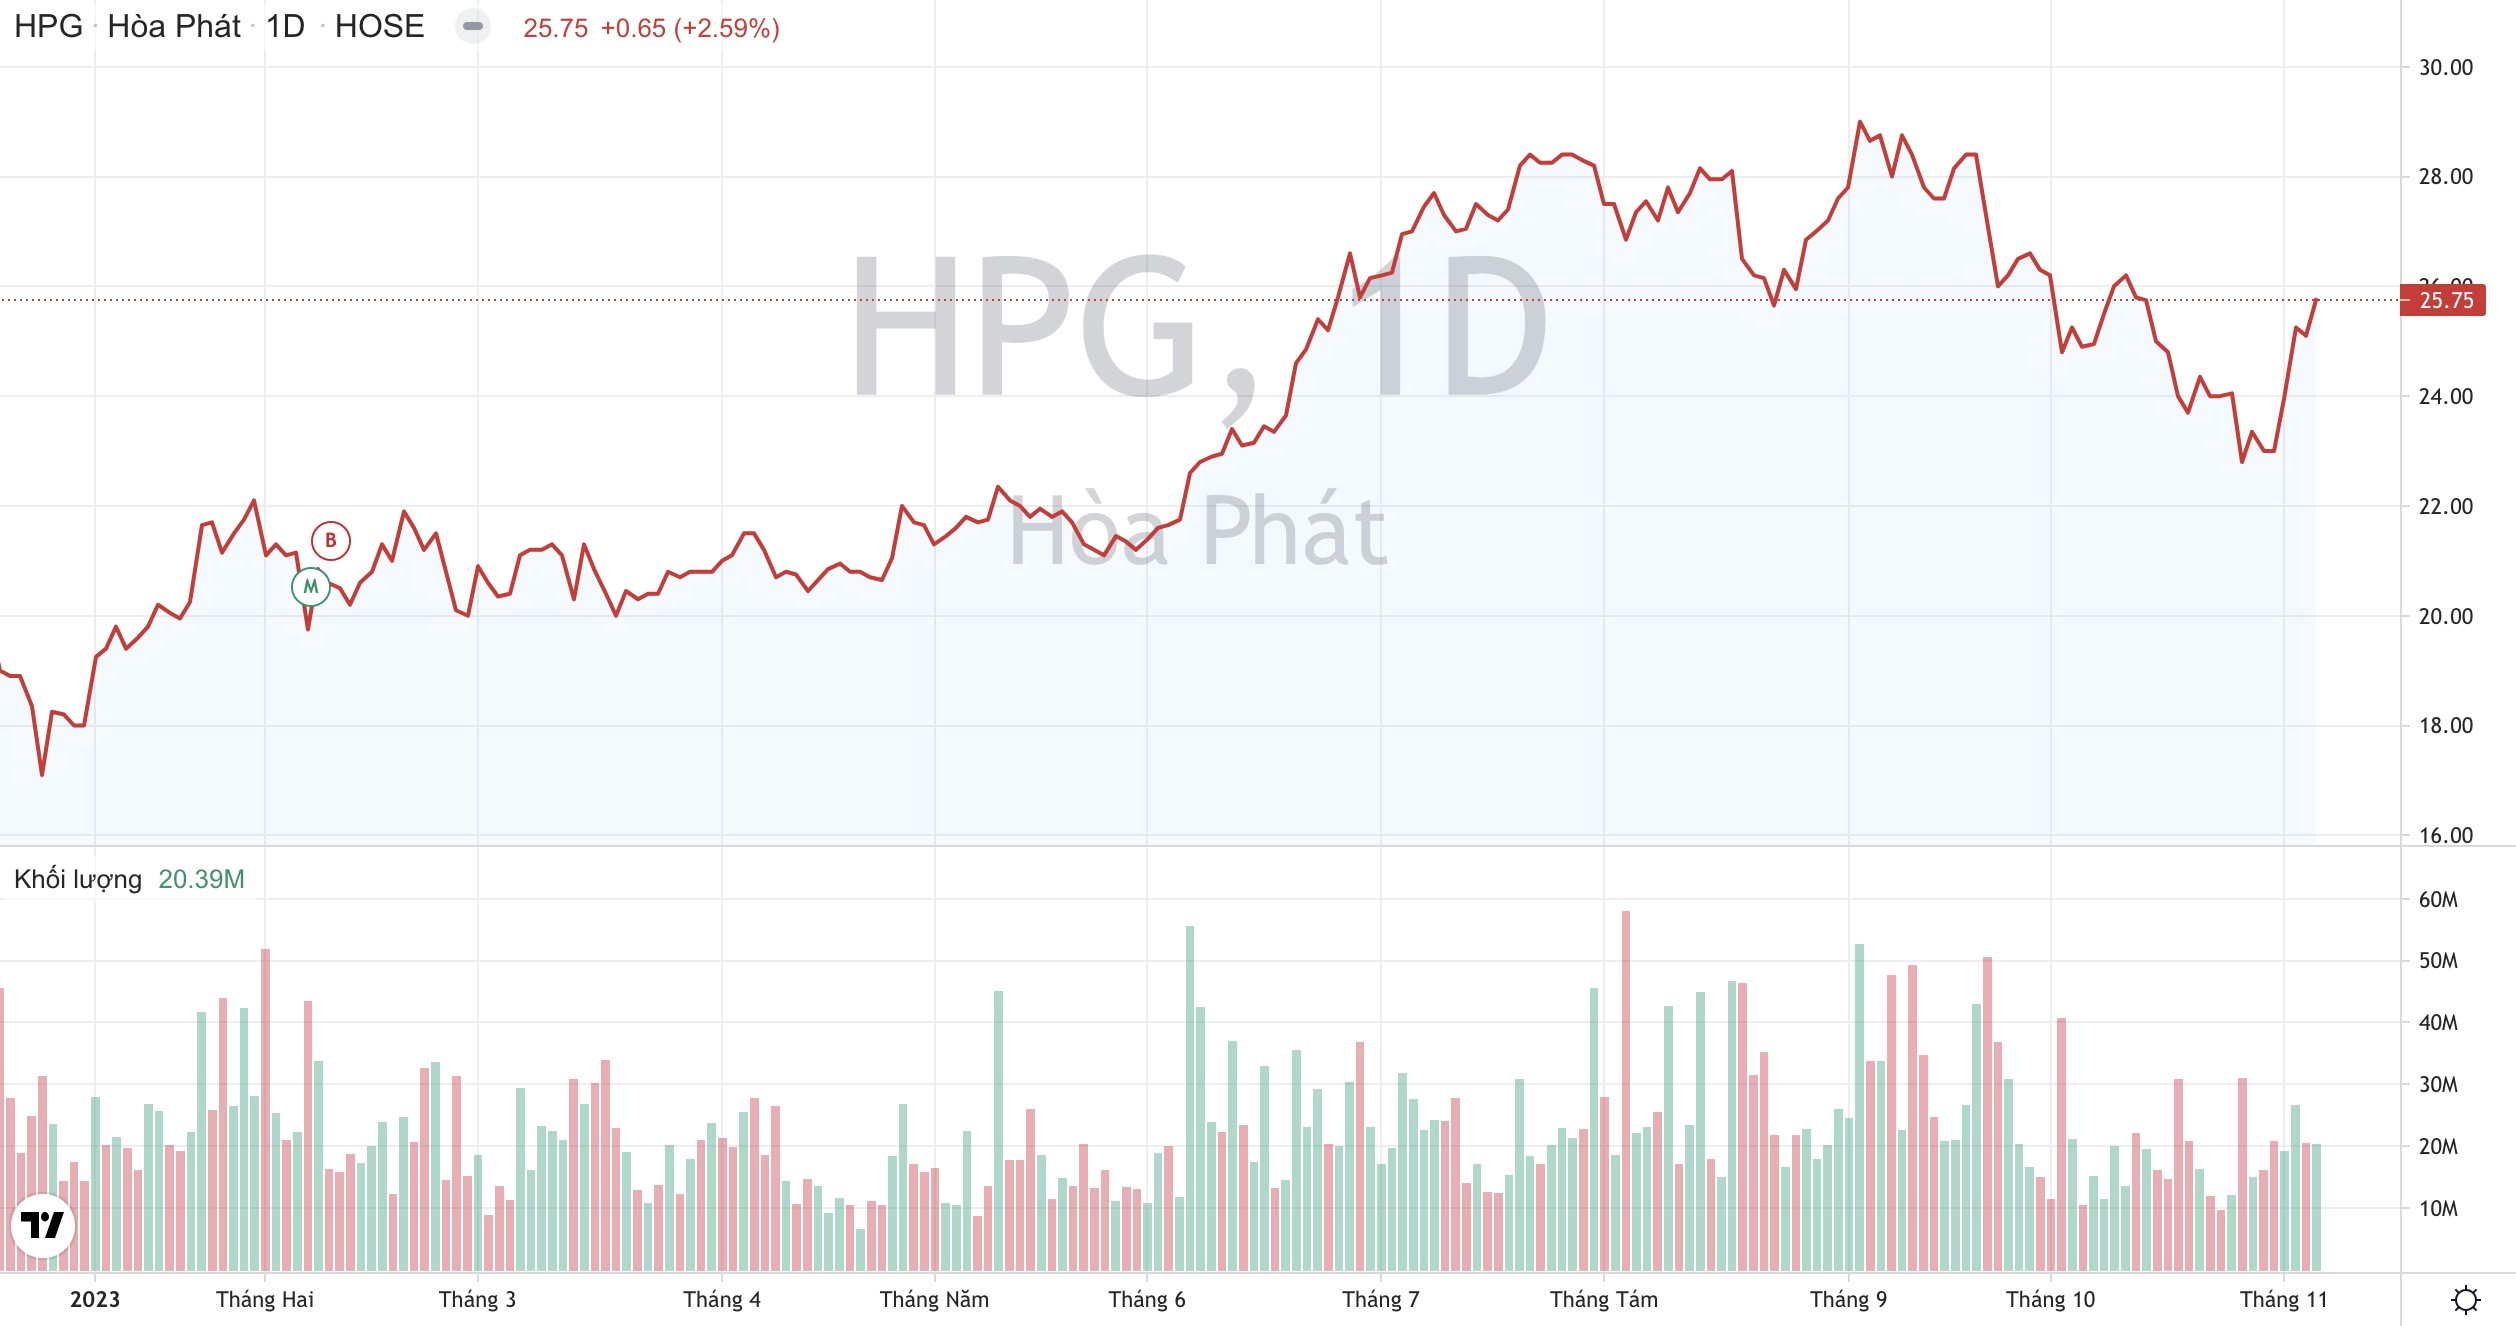 Tiêu thụ thép của Hoà Phát lên cao nhất 16 tháng, định giá cổ phiếu HPG liệu đã hấp dẫn?